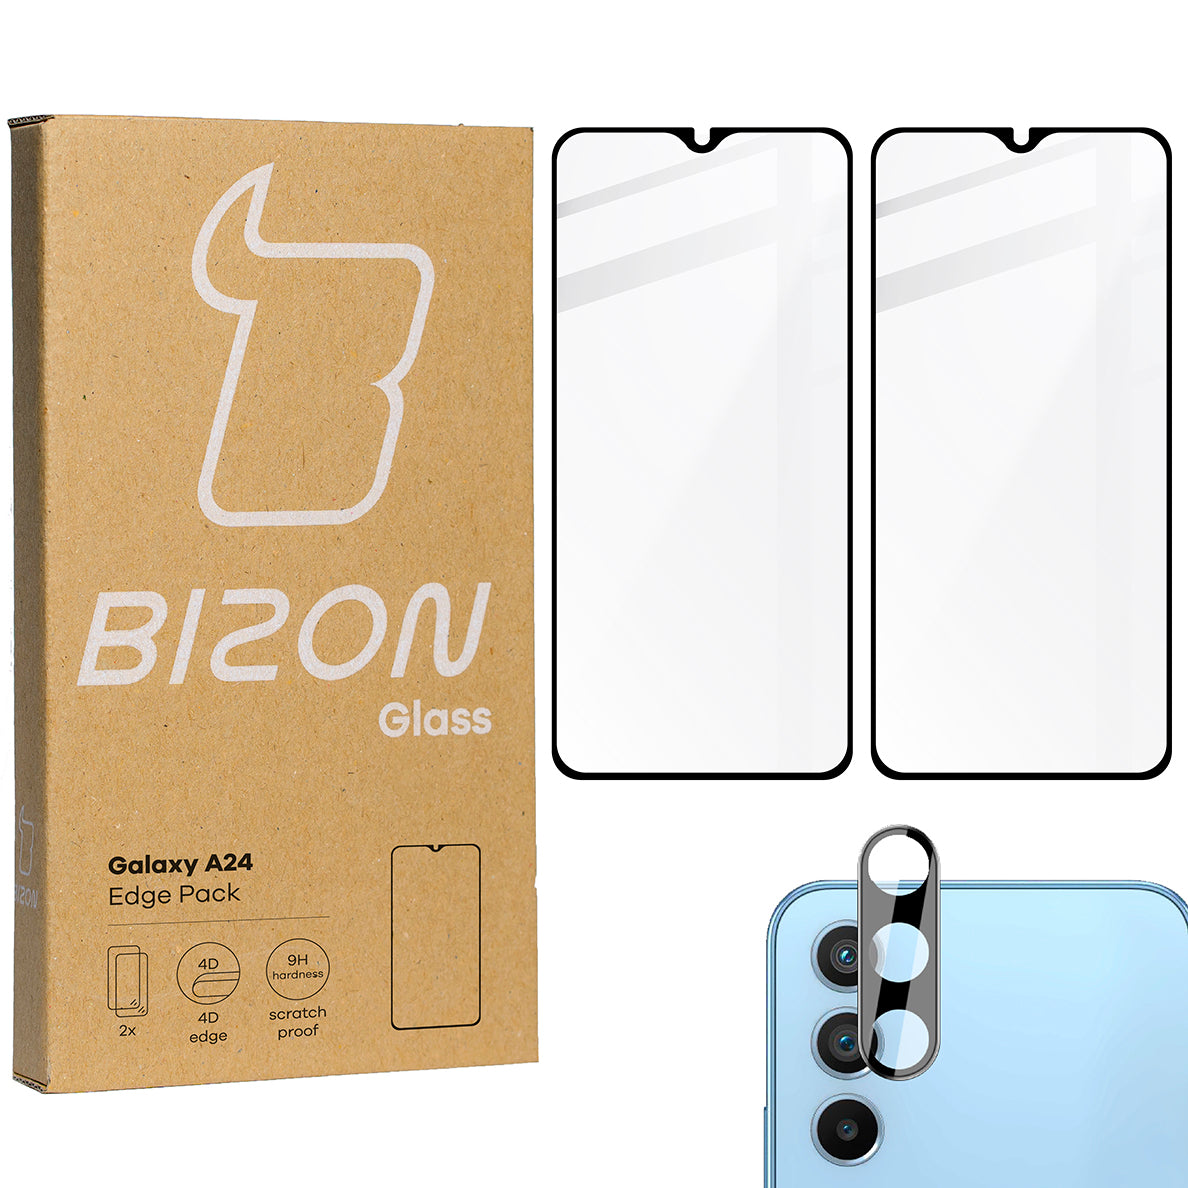 Gehärtetes Glas Bizon Glass Edge Pack - 2 Stück + Kameraschutz für Galaxy A24, Schwarz